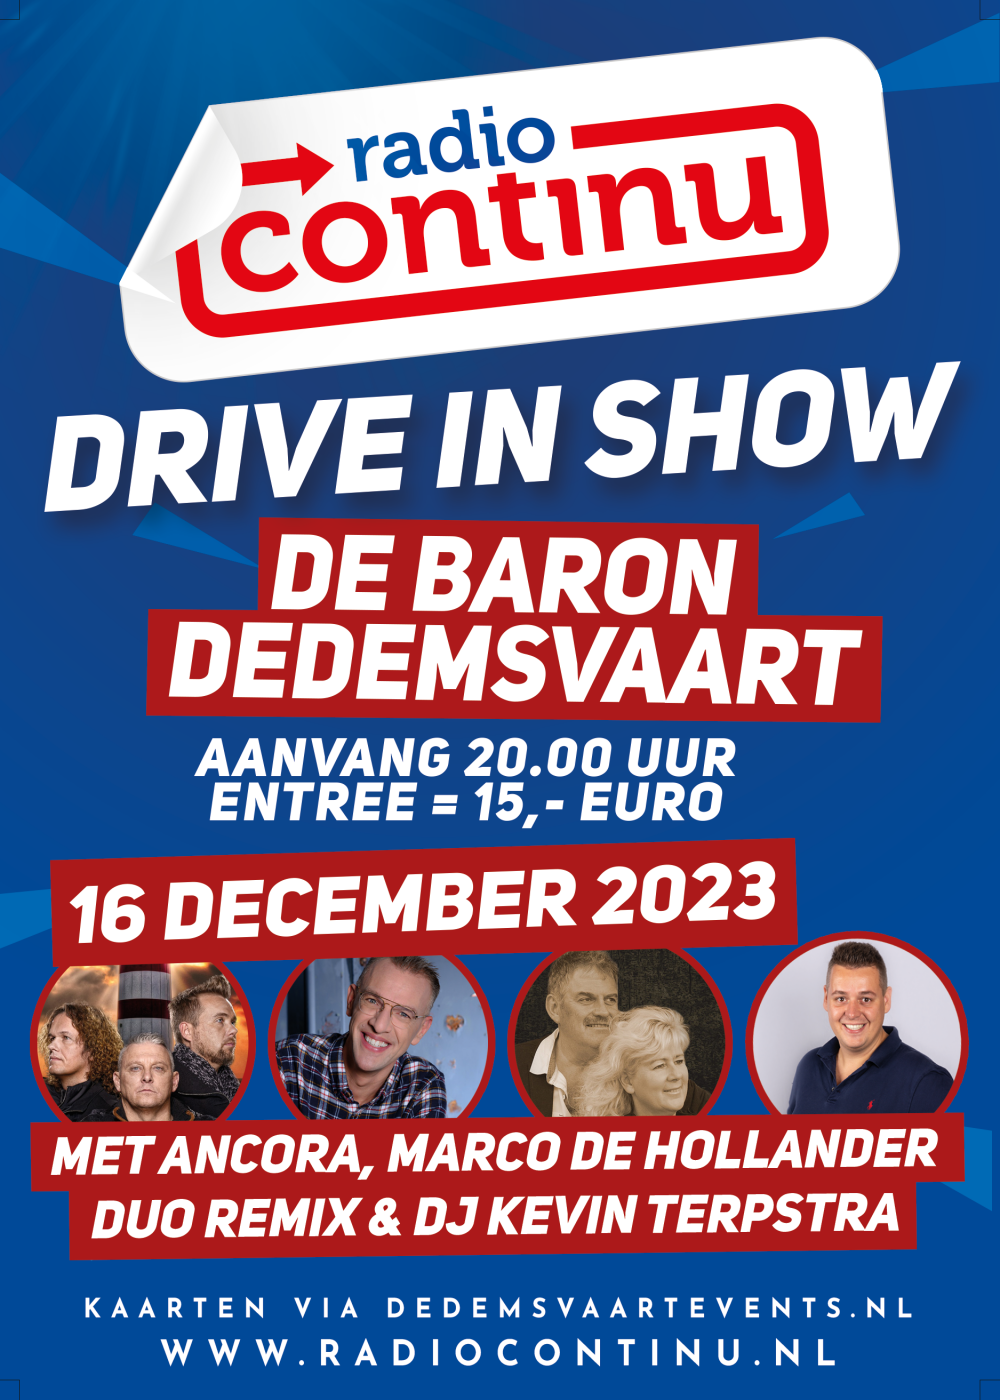 16-12-23: Drive-In Show Dedemsvaart